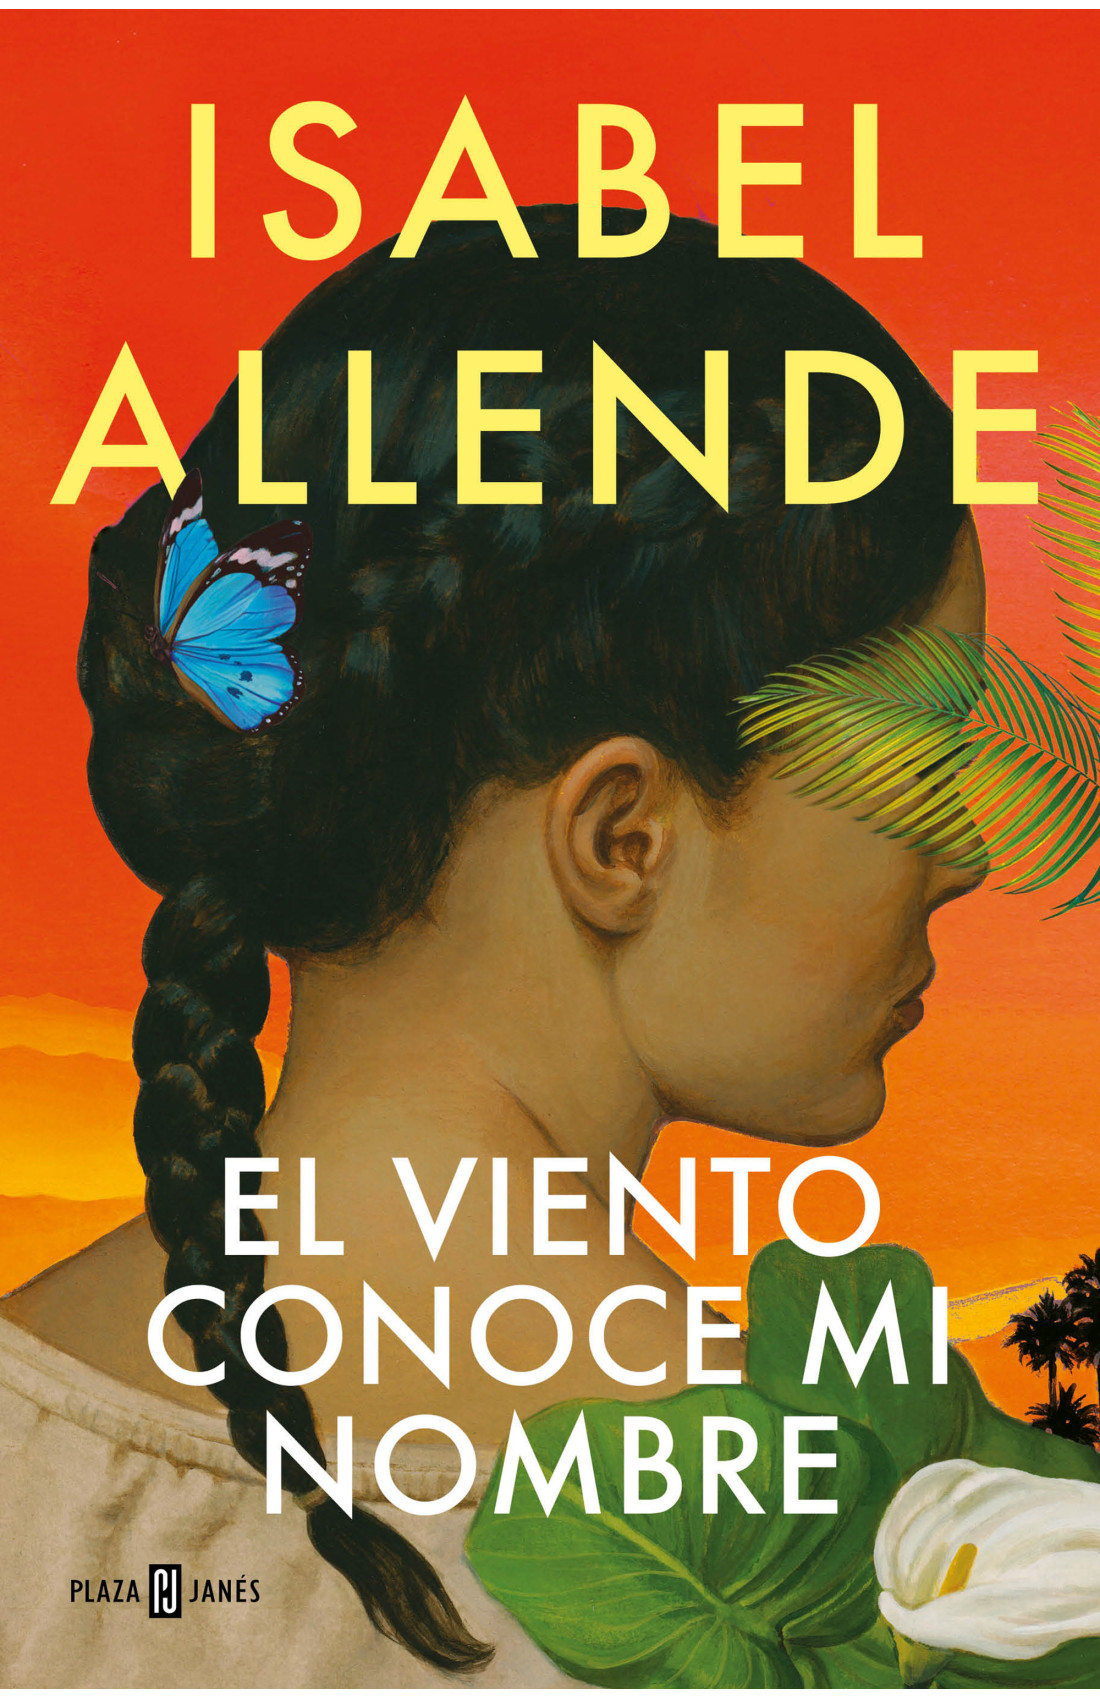 Turbina Remontarse Rápido Isabel Allende publicará un nuevo libro este año - Diario Vivo